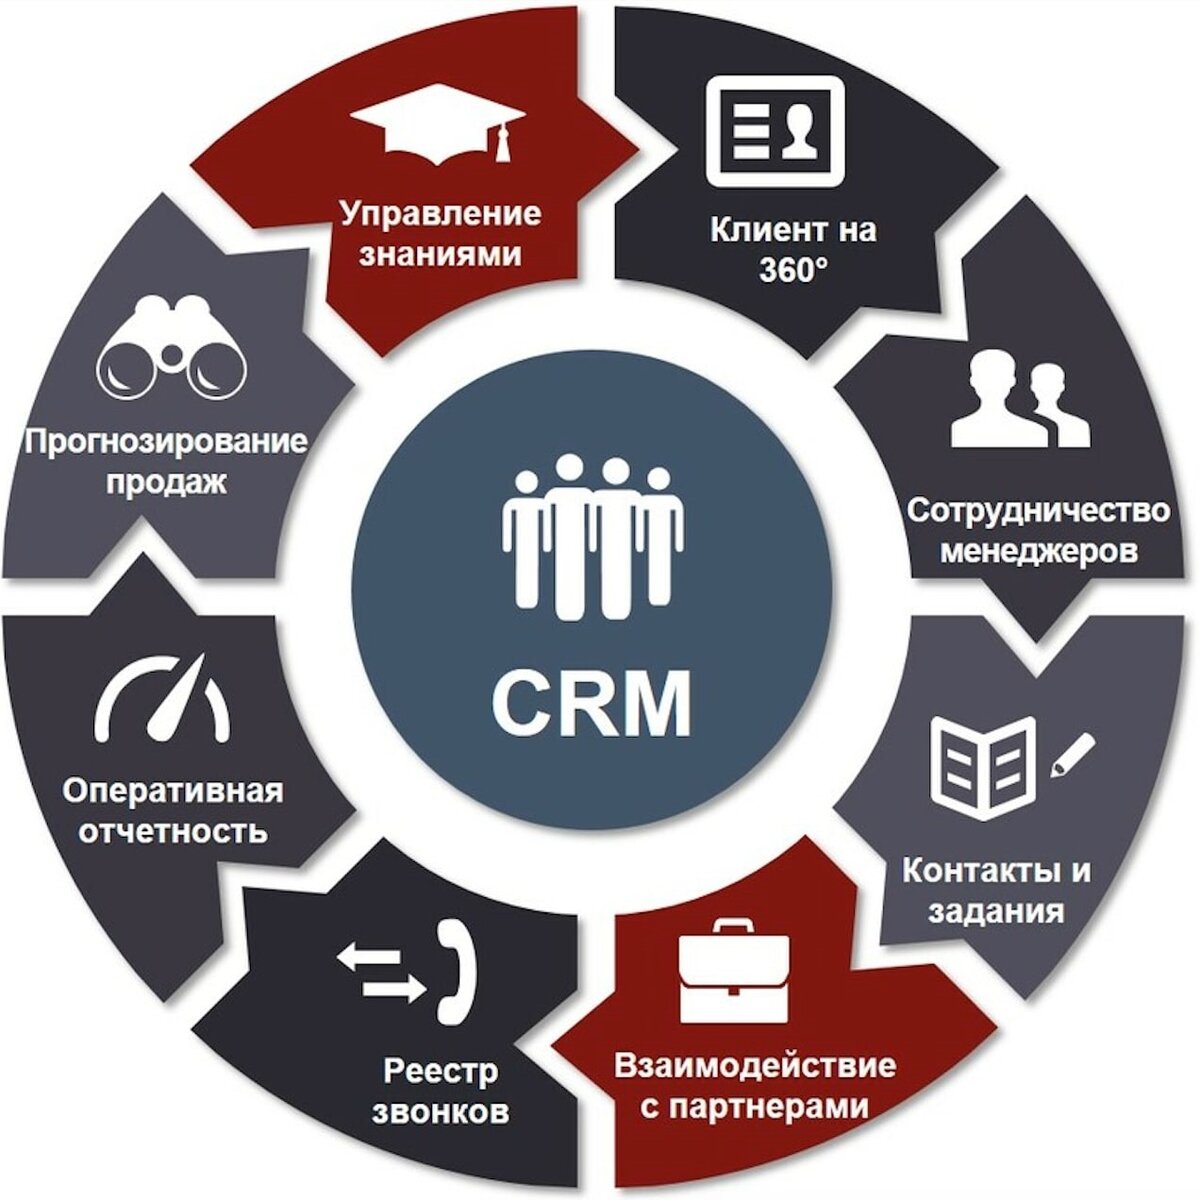 Эффективный простыми словами. CRM системы управления взаимоотношениями с клиентами. GRM - система управления ЗВАИМООТНОШЕНИЯ С клиентами. CRM (customer relationship Management) системы. CRM системы что это.